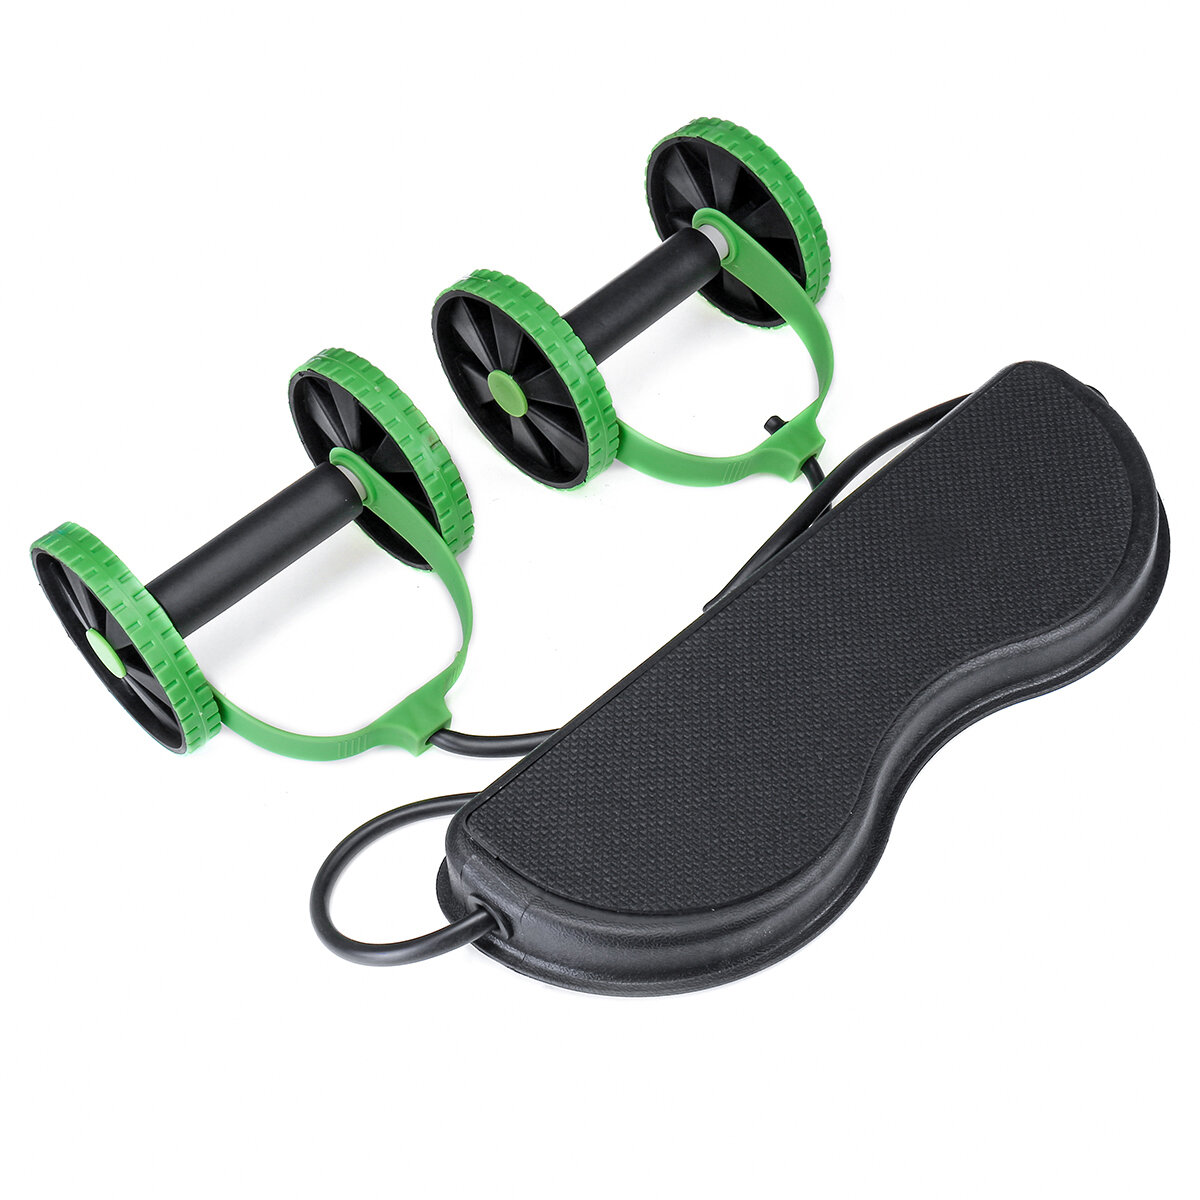 多機能フィットネス機器アブローラーペダルシットアッププルロープトレーニング筋肉腹筋運動ツール